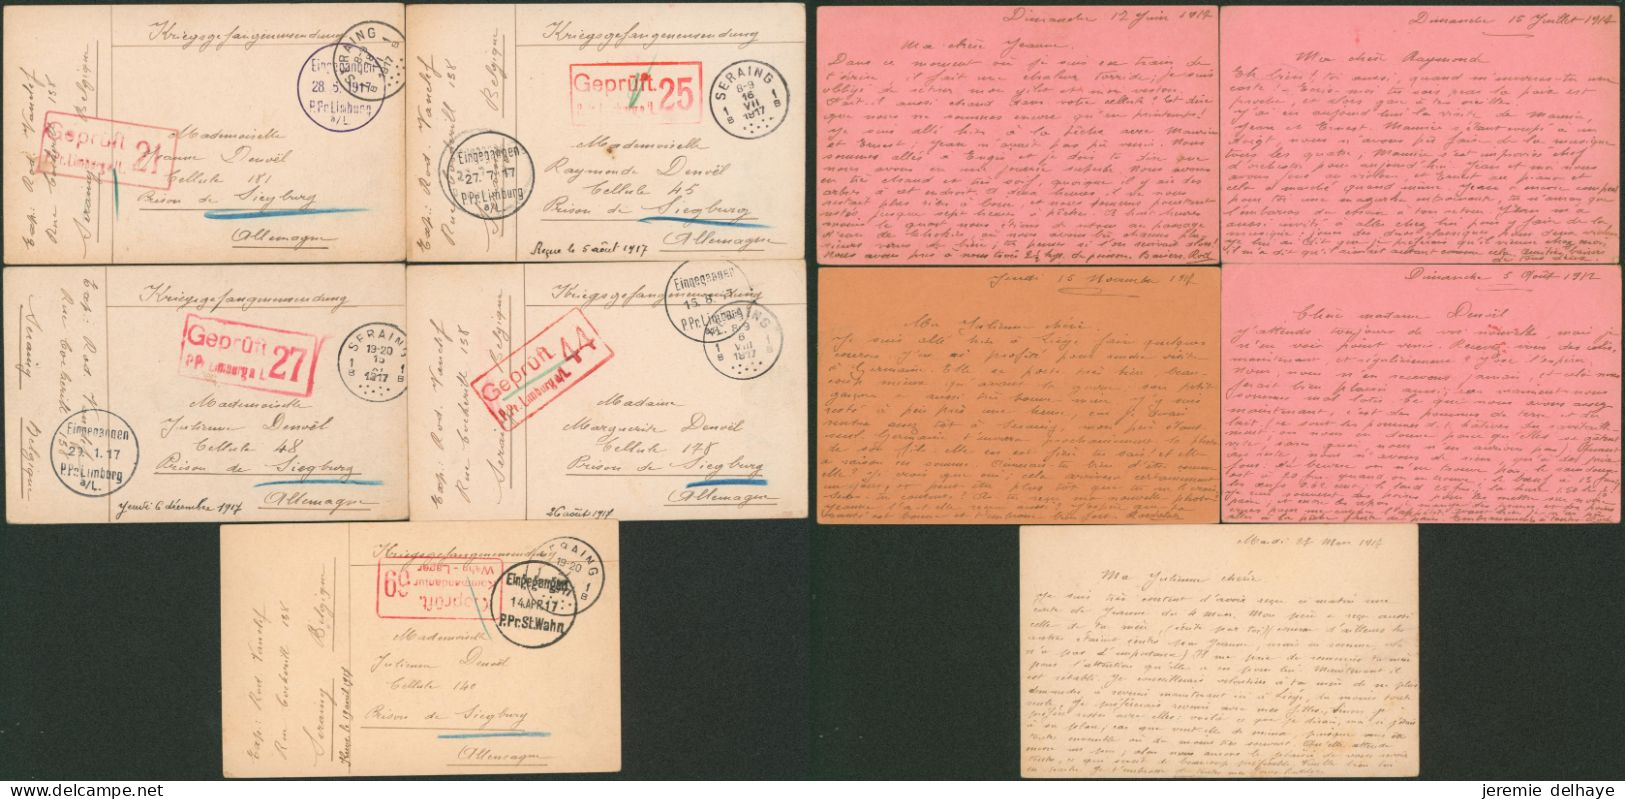 Guerre 14-18 - Archive De 5 Documents De Seraing (1917) > Prison De Siegburg + Censure Différente. - Kriegsgefangenschaft